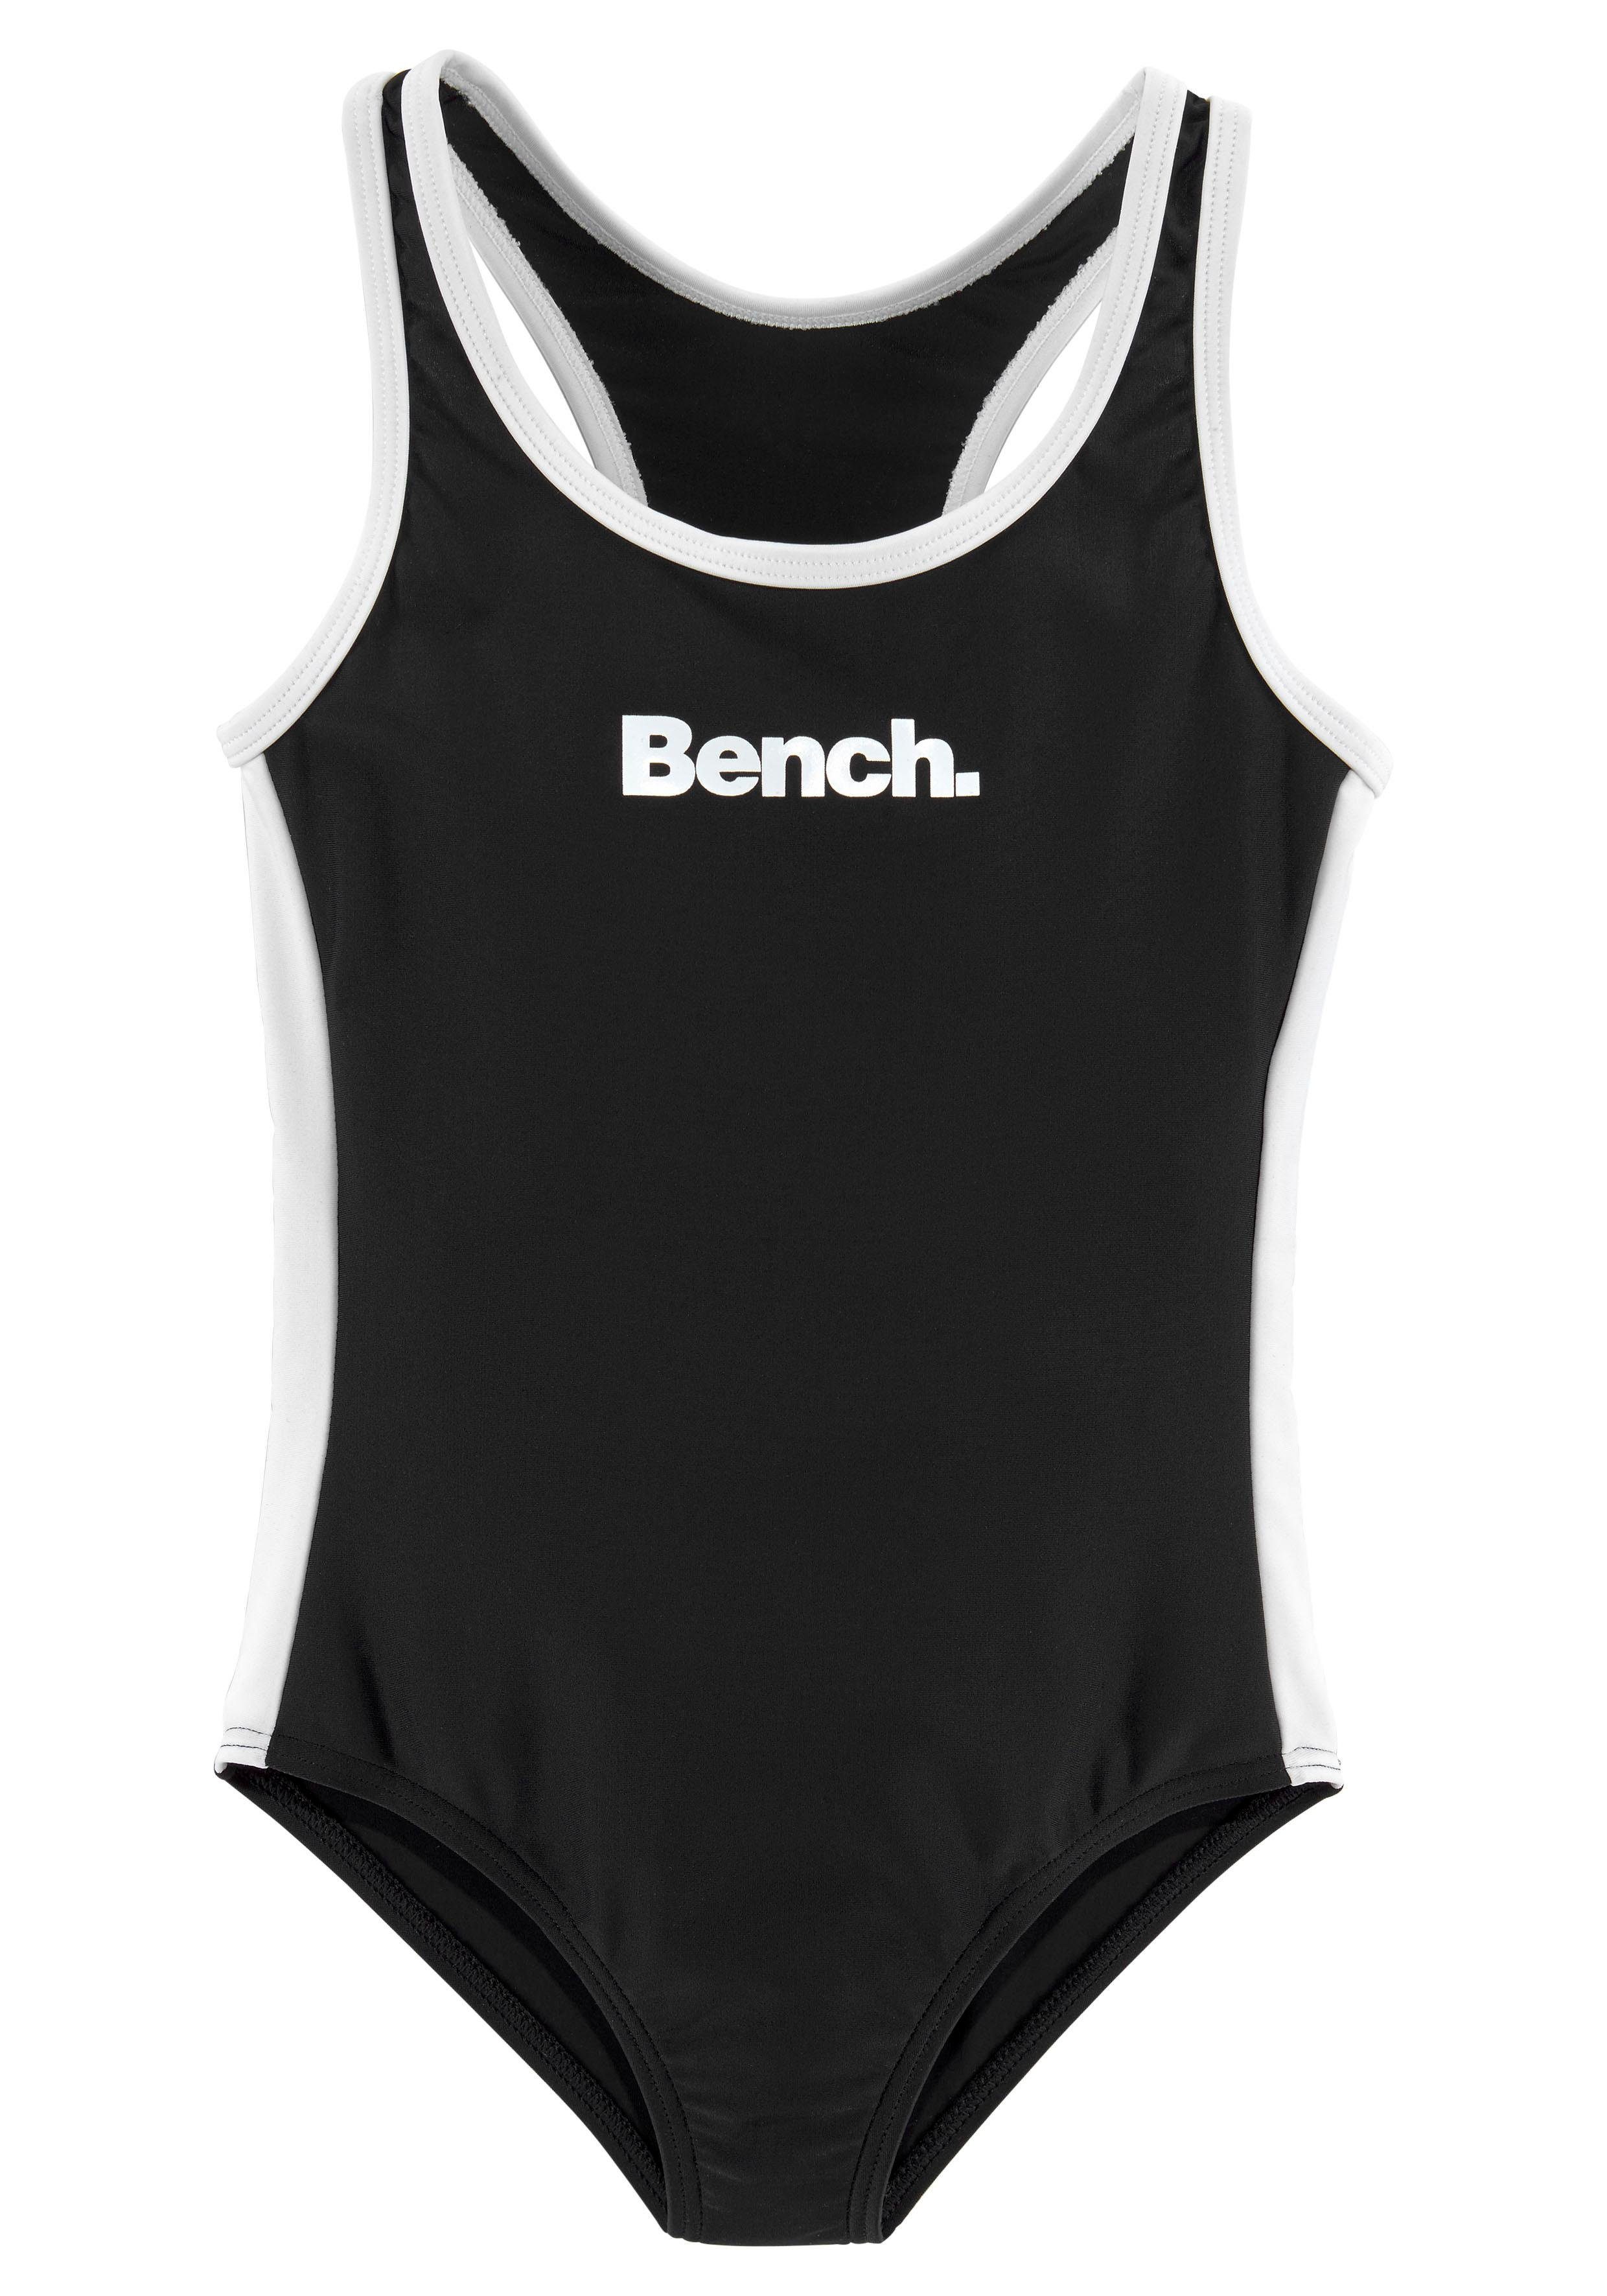 Bench. Badeanzug mit Logoprint schwarz-weiß